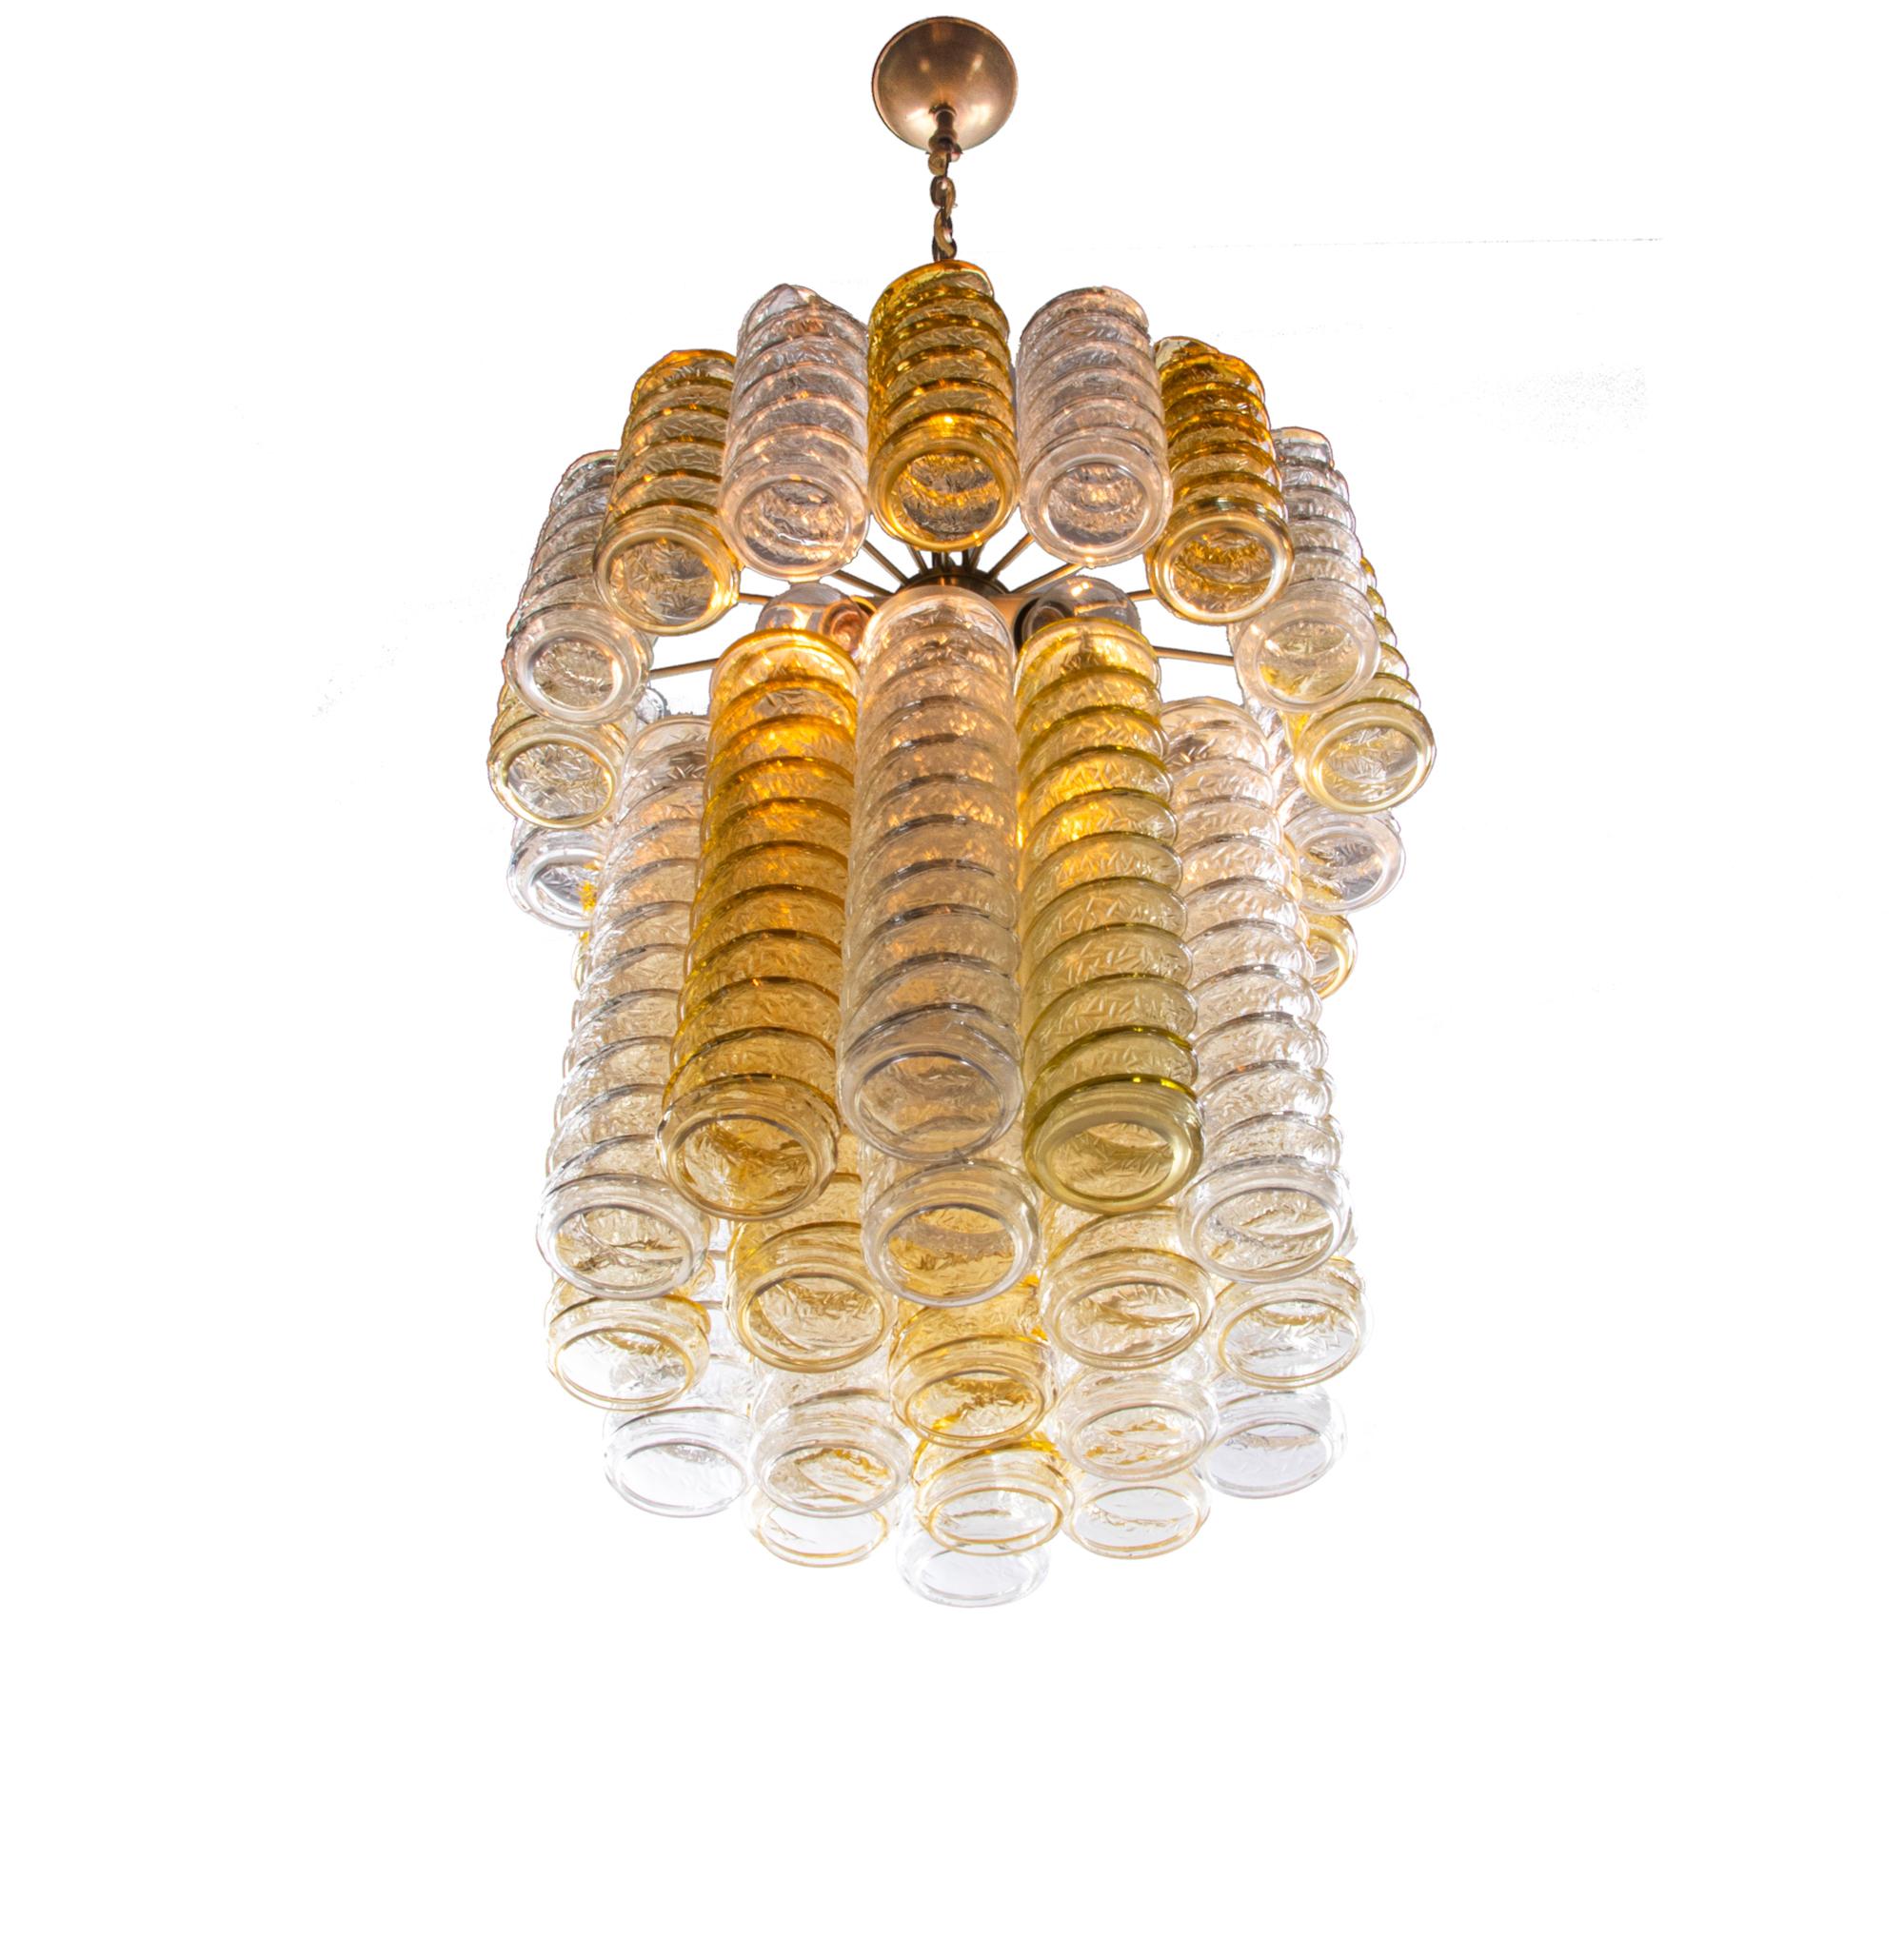 Élégant lustre à tourbillons conçu par Paolo Venini avec trente-sept grands verres de Murano torsadés, ambrés et transparents, suspendus en deux étages autour d'une armature en laiton chromé, qui grâce à un éclairage puissant offre un beau jeu de